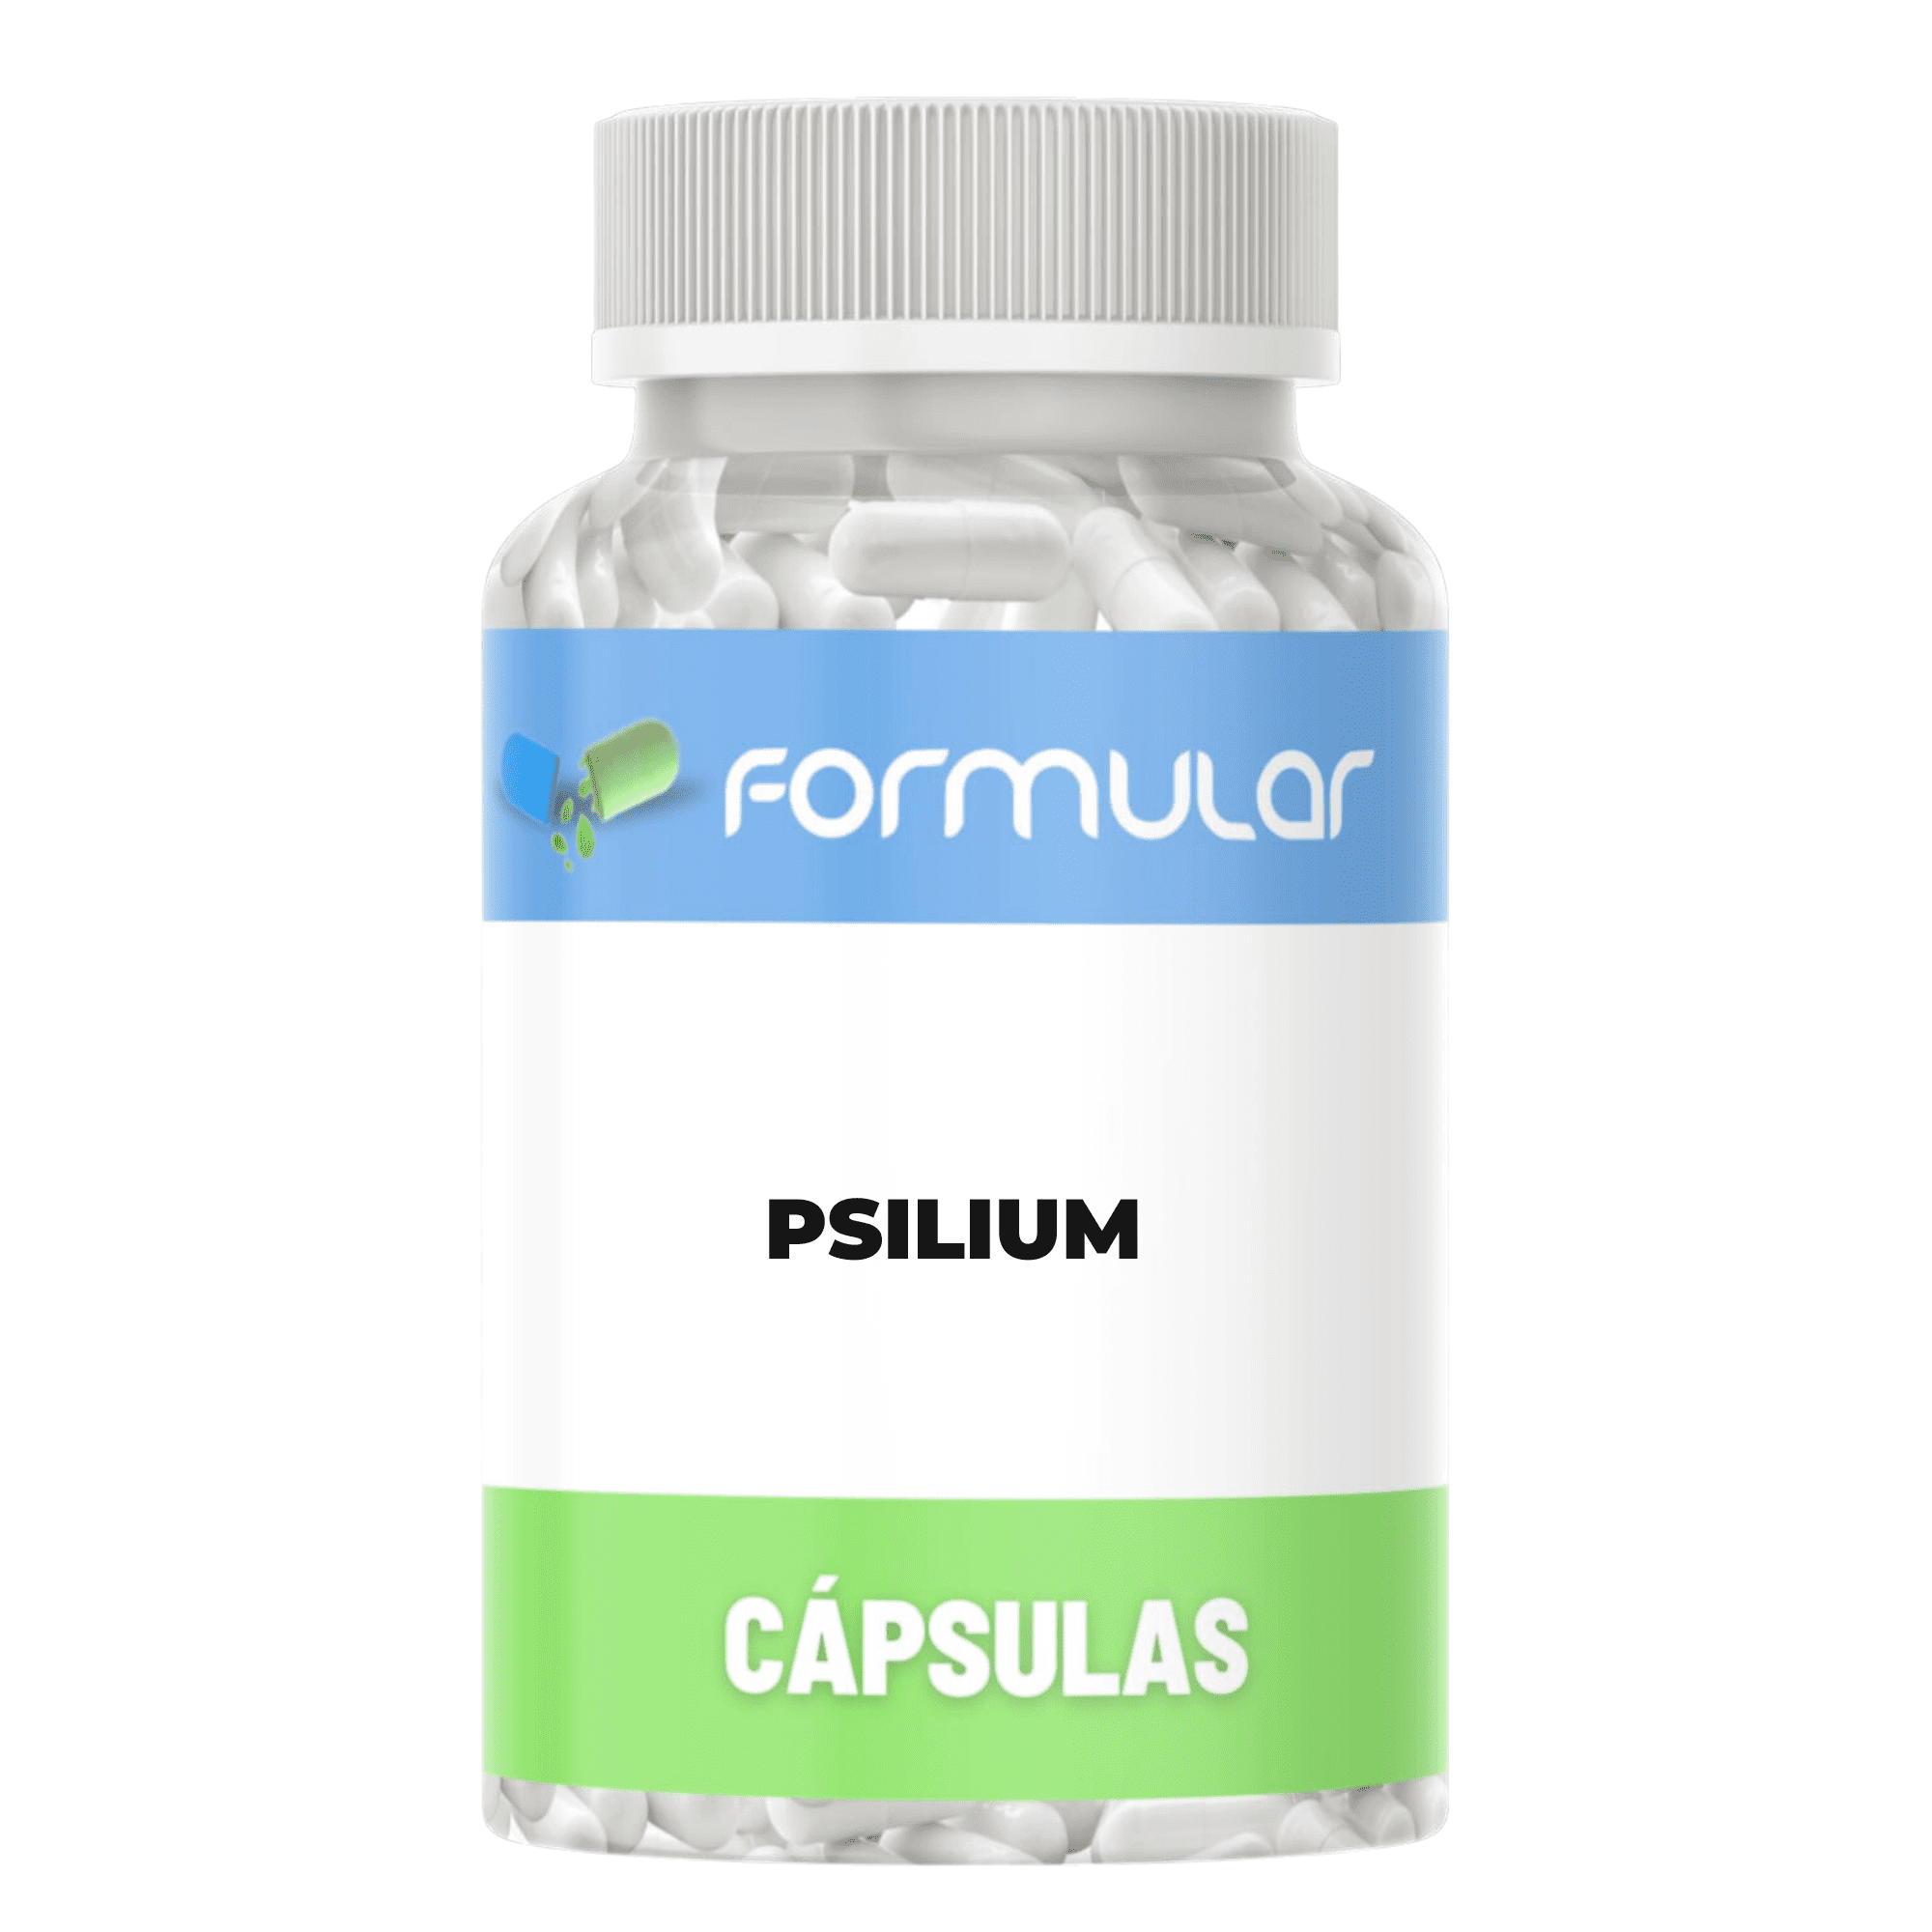 Psilium 500Mg - 60 Capsulas - Auxilia no controle do colesterol e no emagrecimento